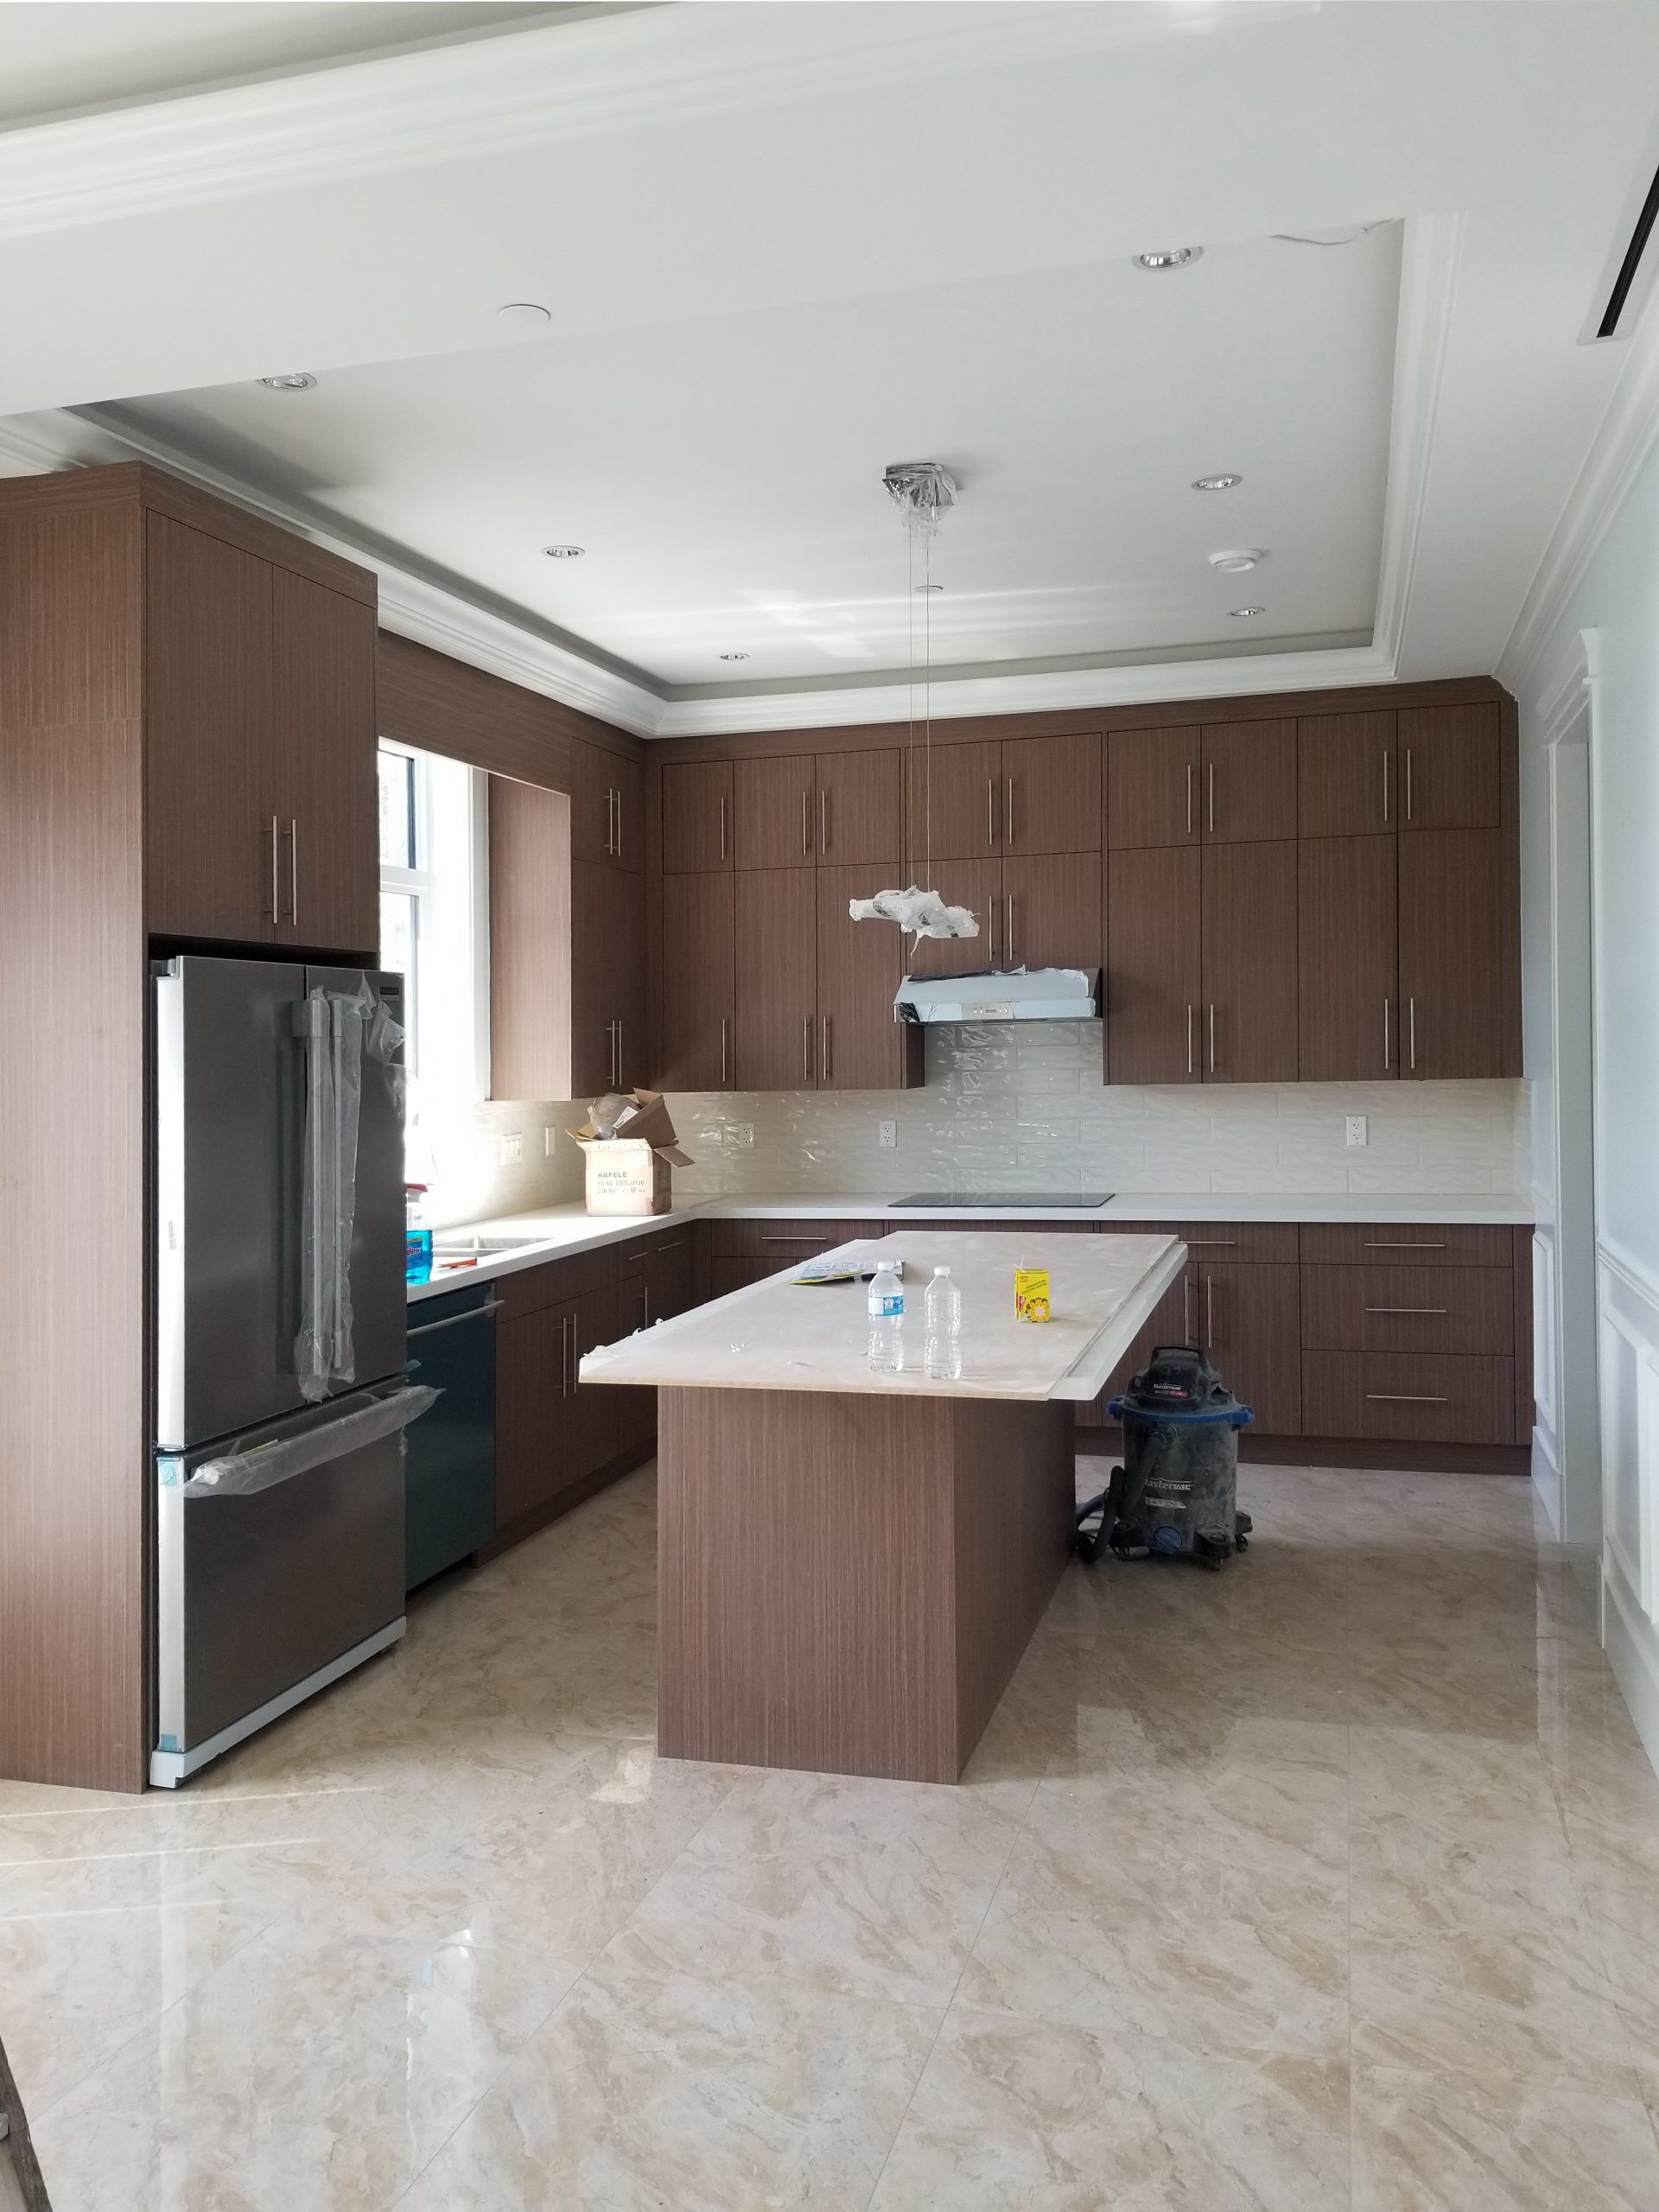 Foresight Homes premium kitchen design